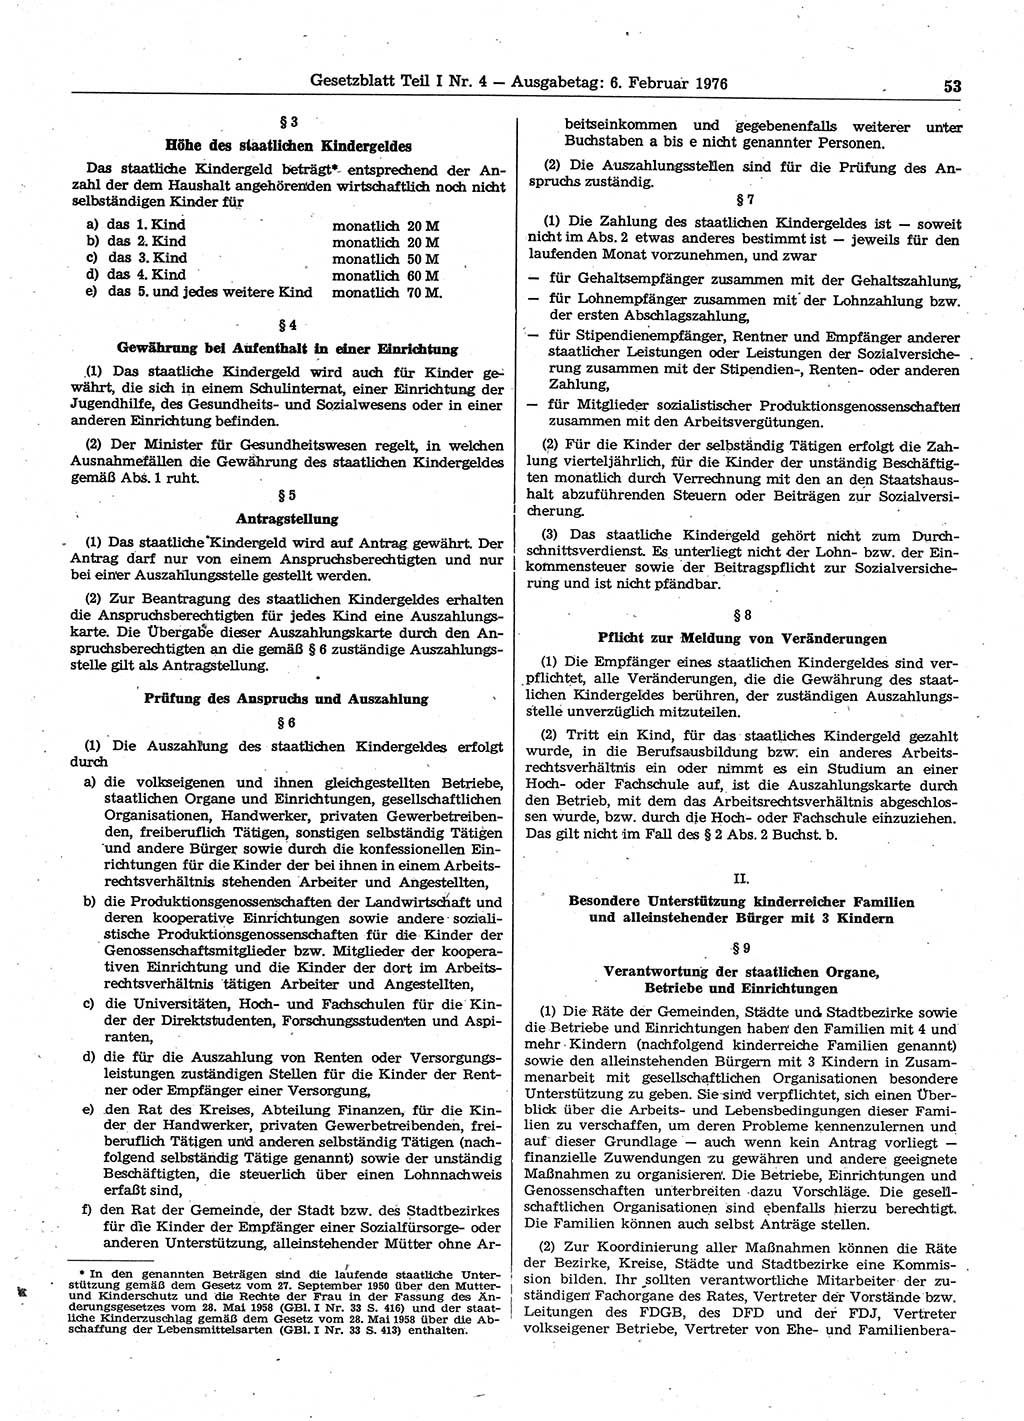 Gesetzblatt (GBl.) der Deutschen Demokratischen Republik (DDR) Teil Ⅰ 1976, Seite 53 (GBl. DDR Ⅰ 1976, S. 53)